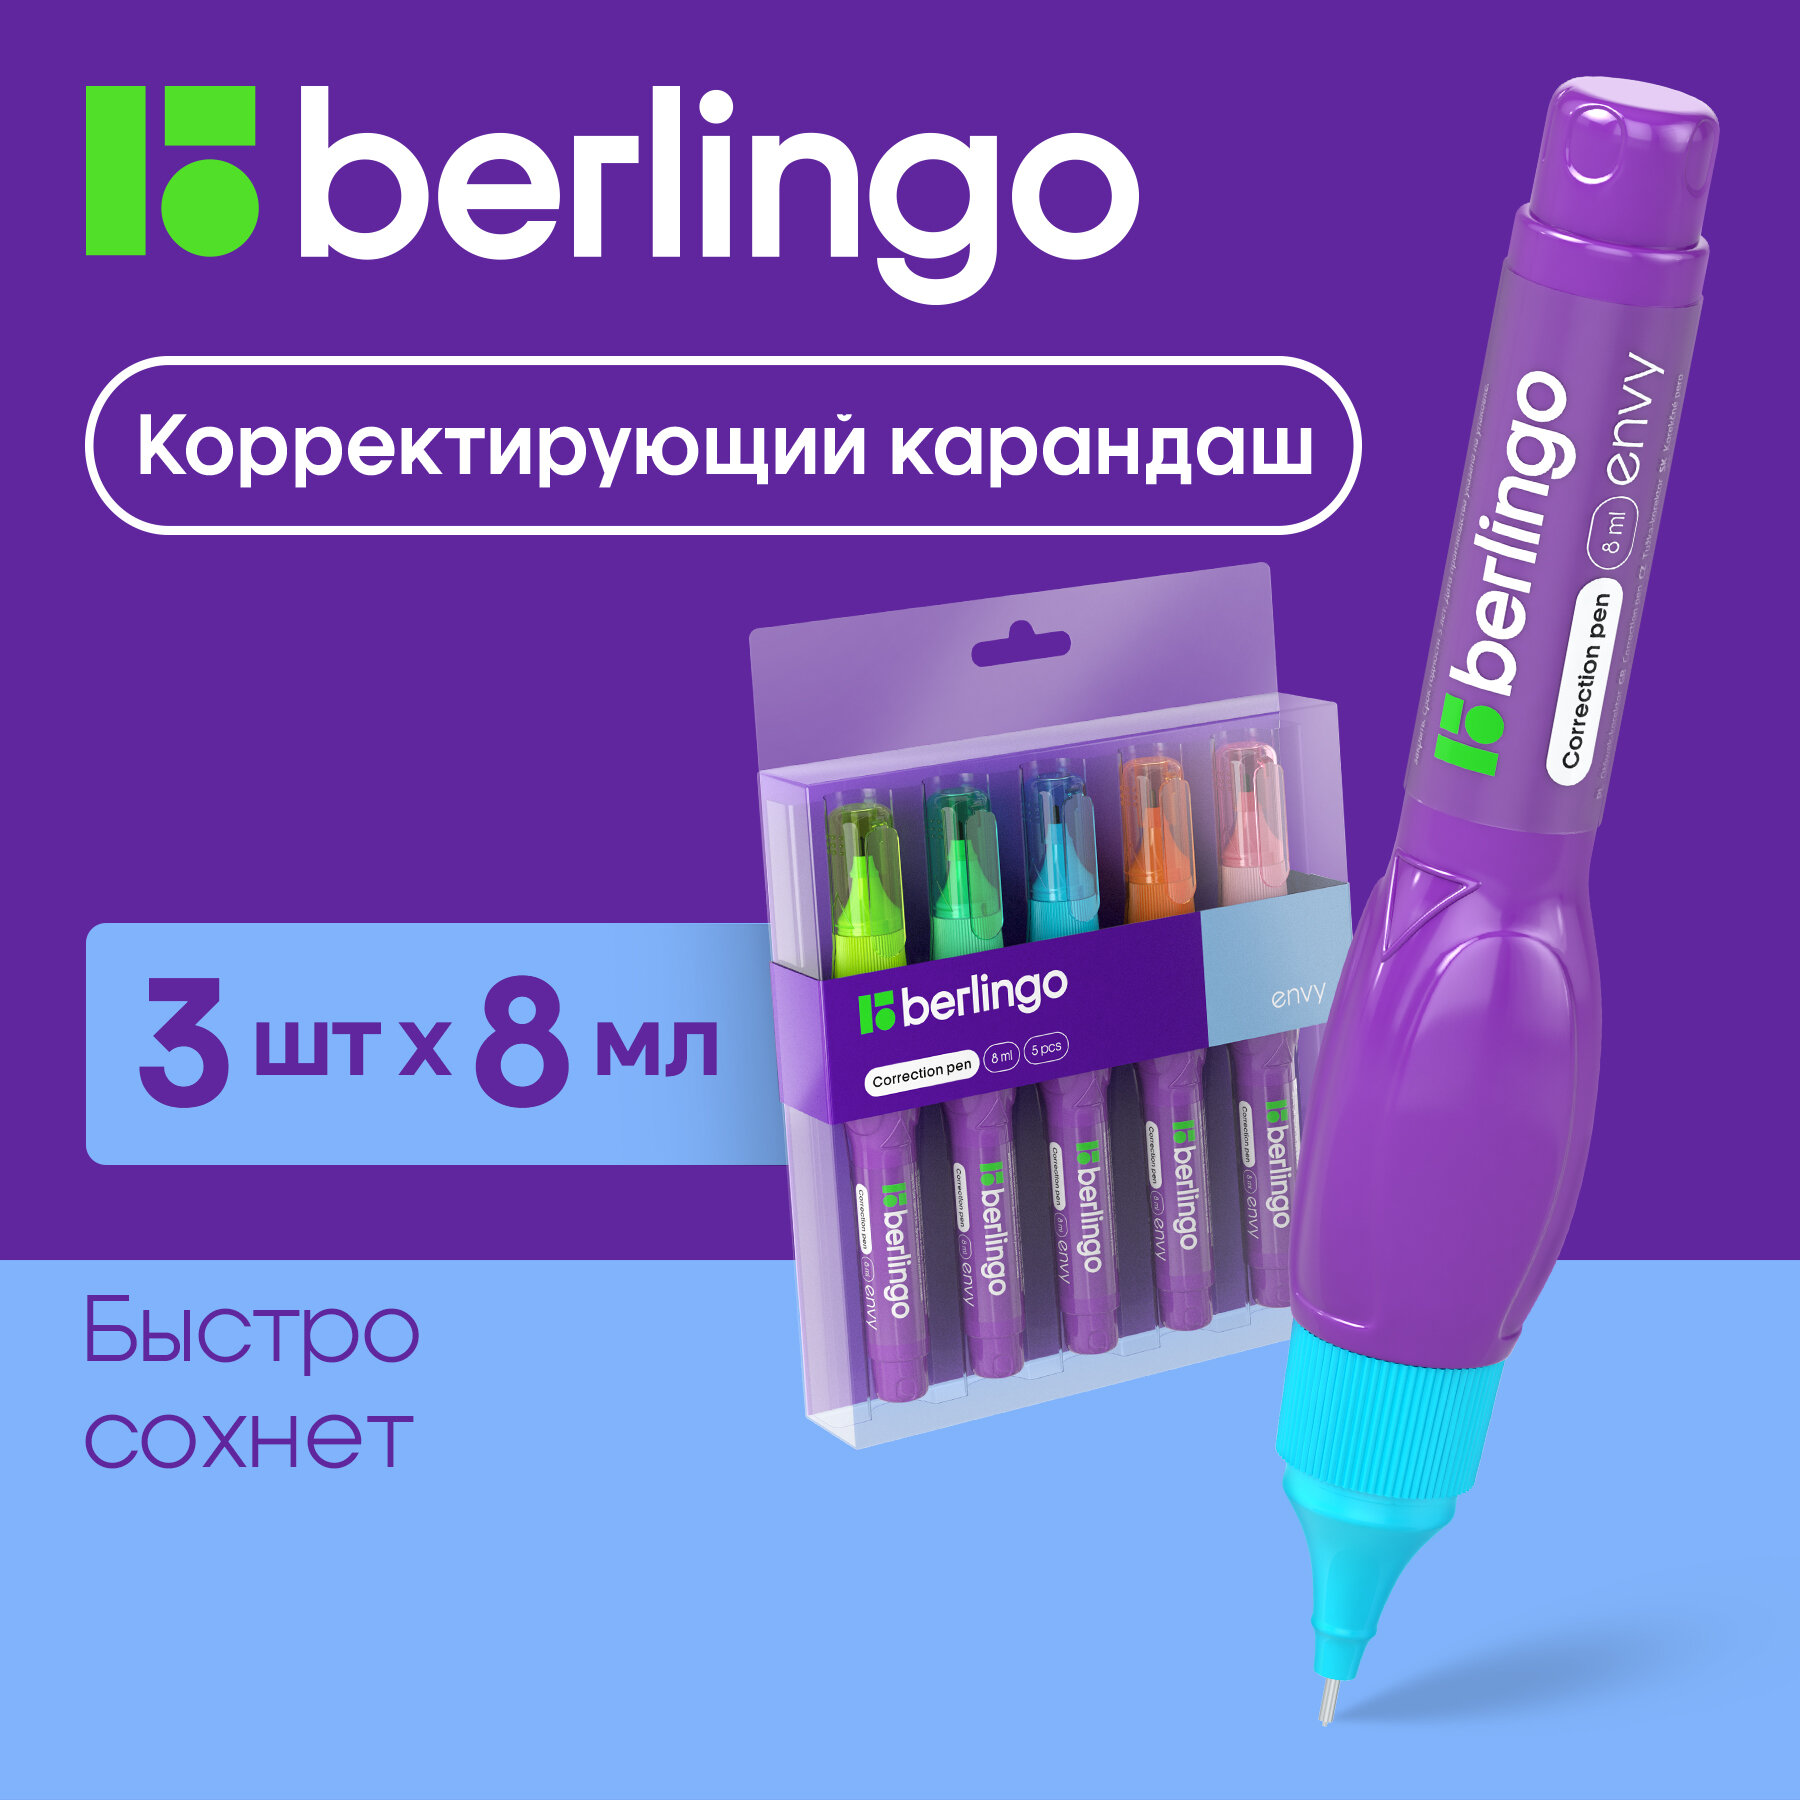 Корректирующий карандаш Berlingo Envy, 8мл, металлический наконечник, 5шт